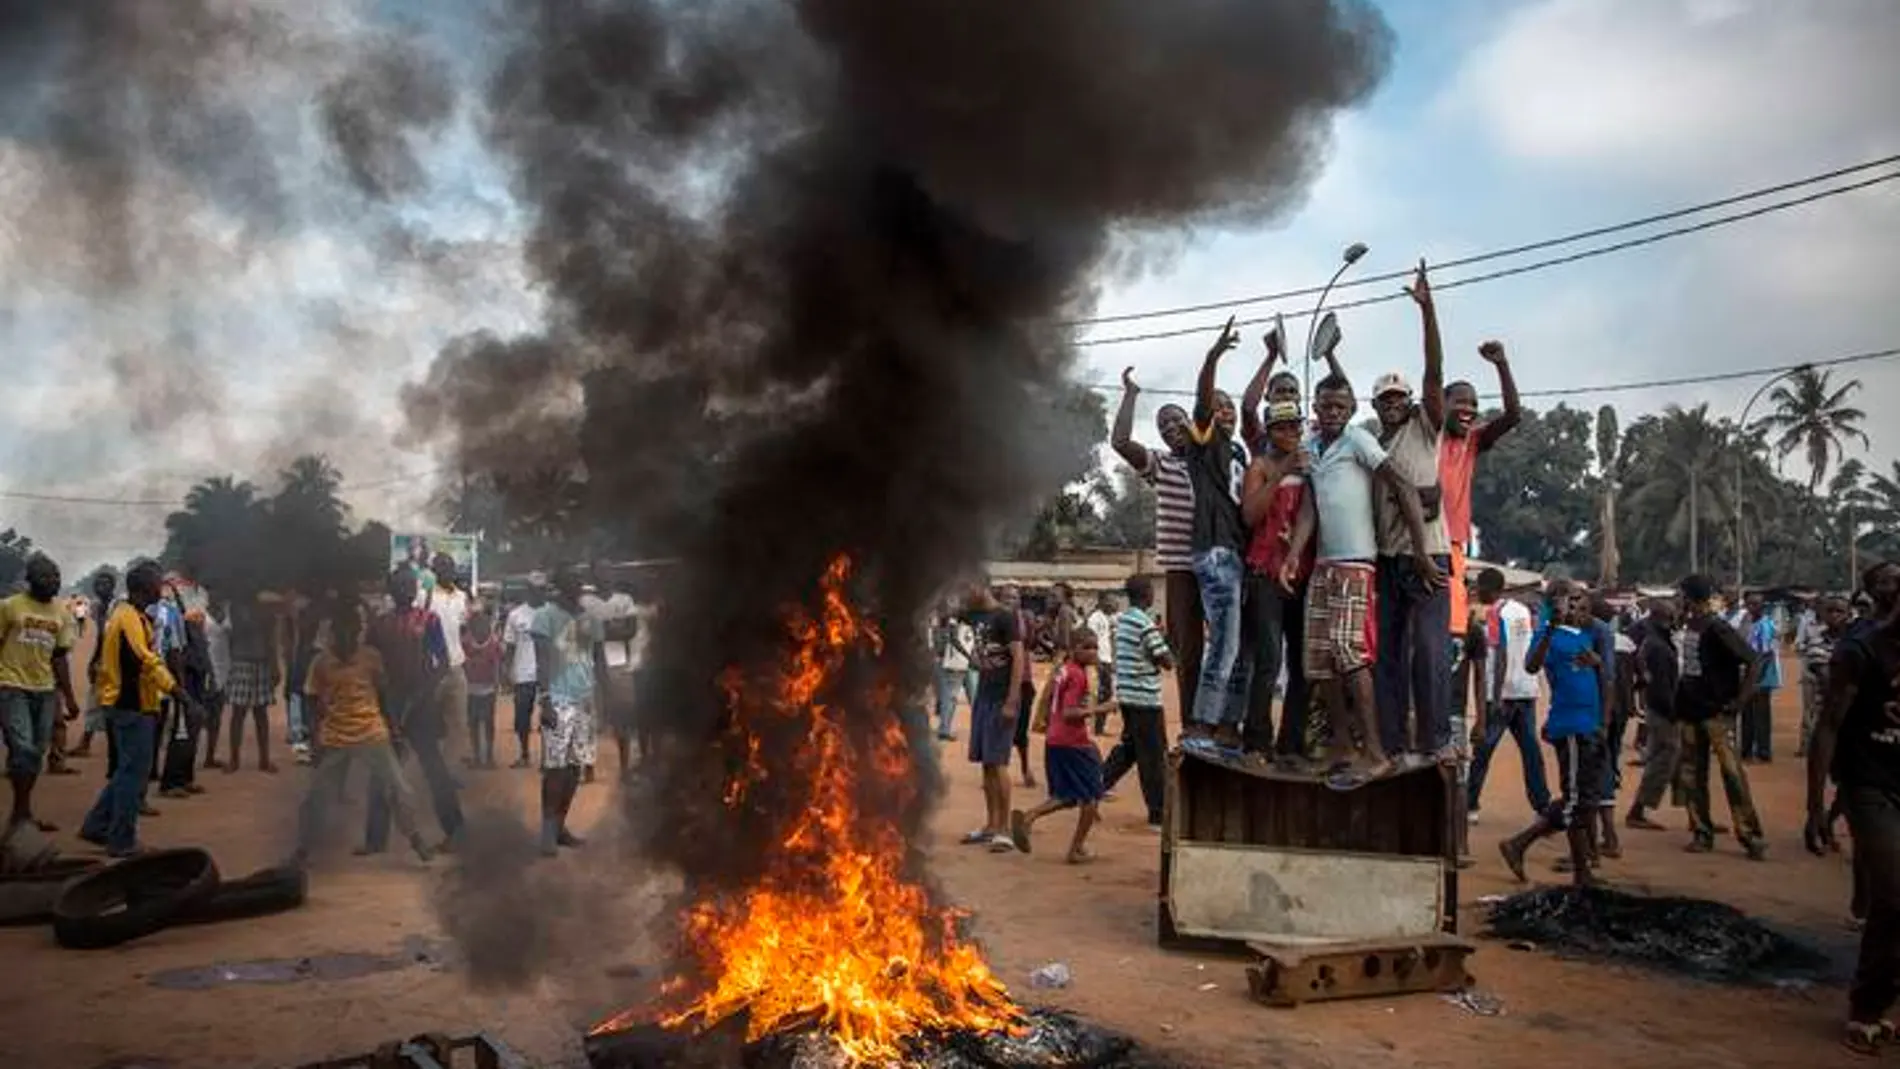 Fotografía de William Daniels, segundo premio en repottajes sobre noticias generales. Disturbios en Bangui, República Centroafricana